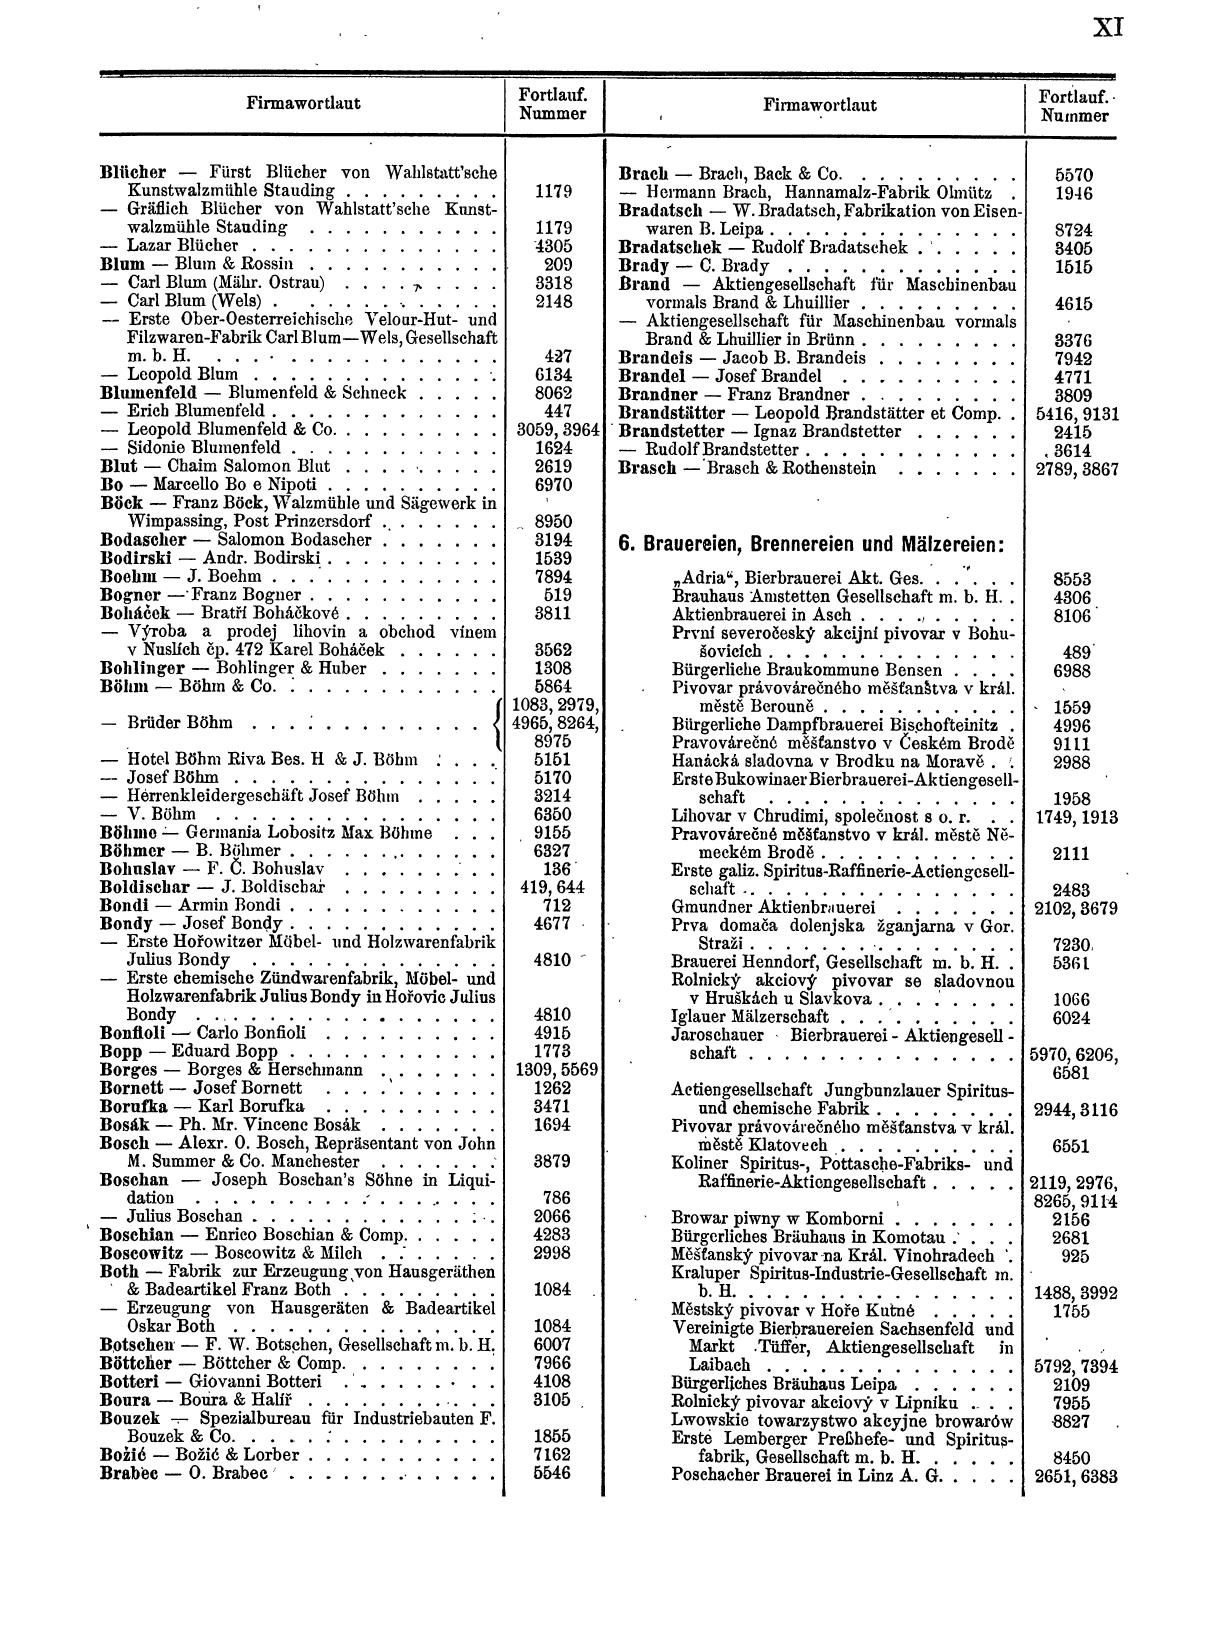 Zentralblatt für die Eintragungen in das Handelsregister 1913, Teil 1 - Seite 19